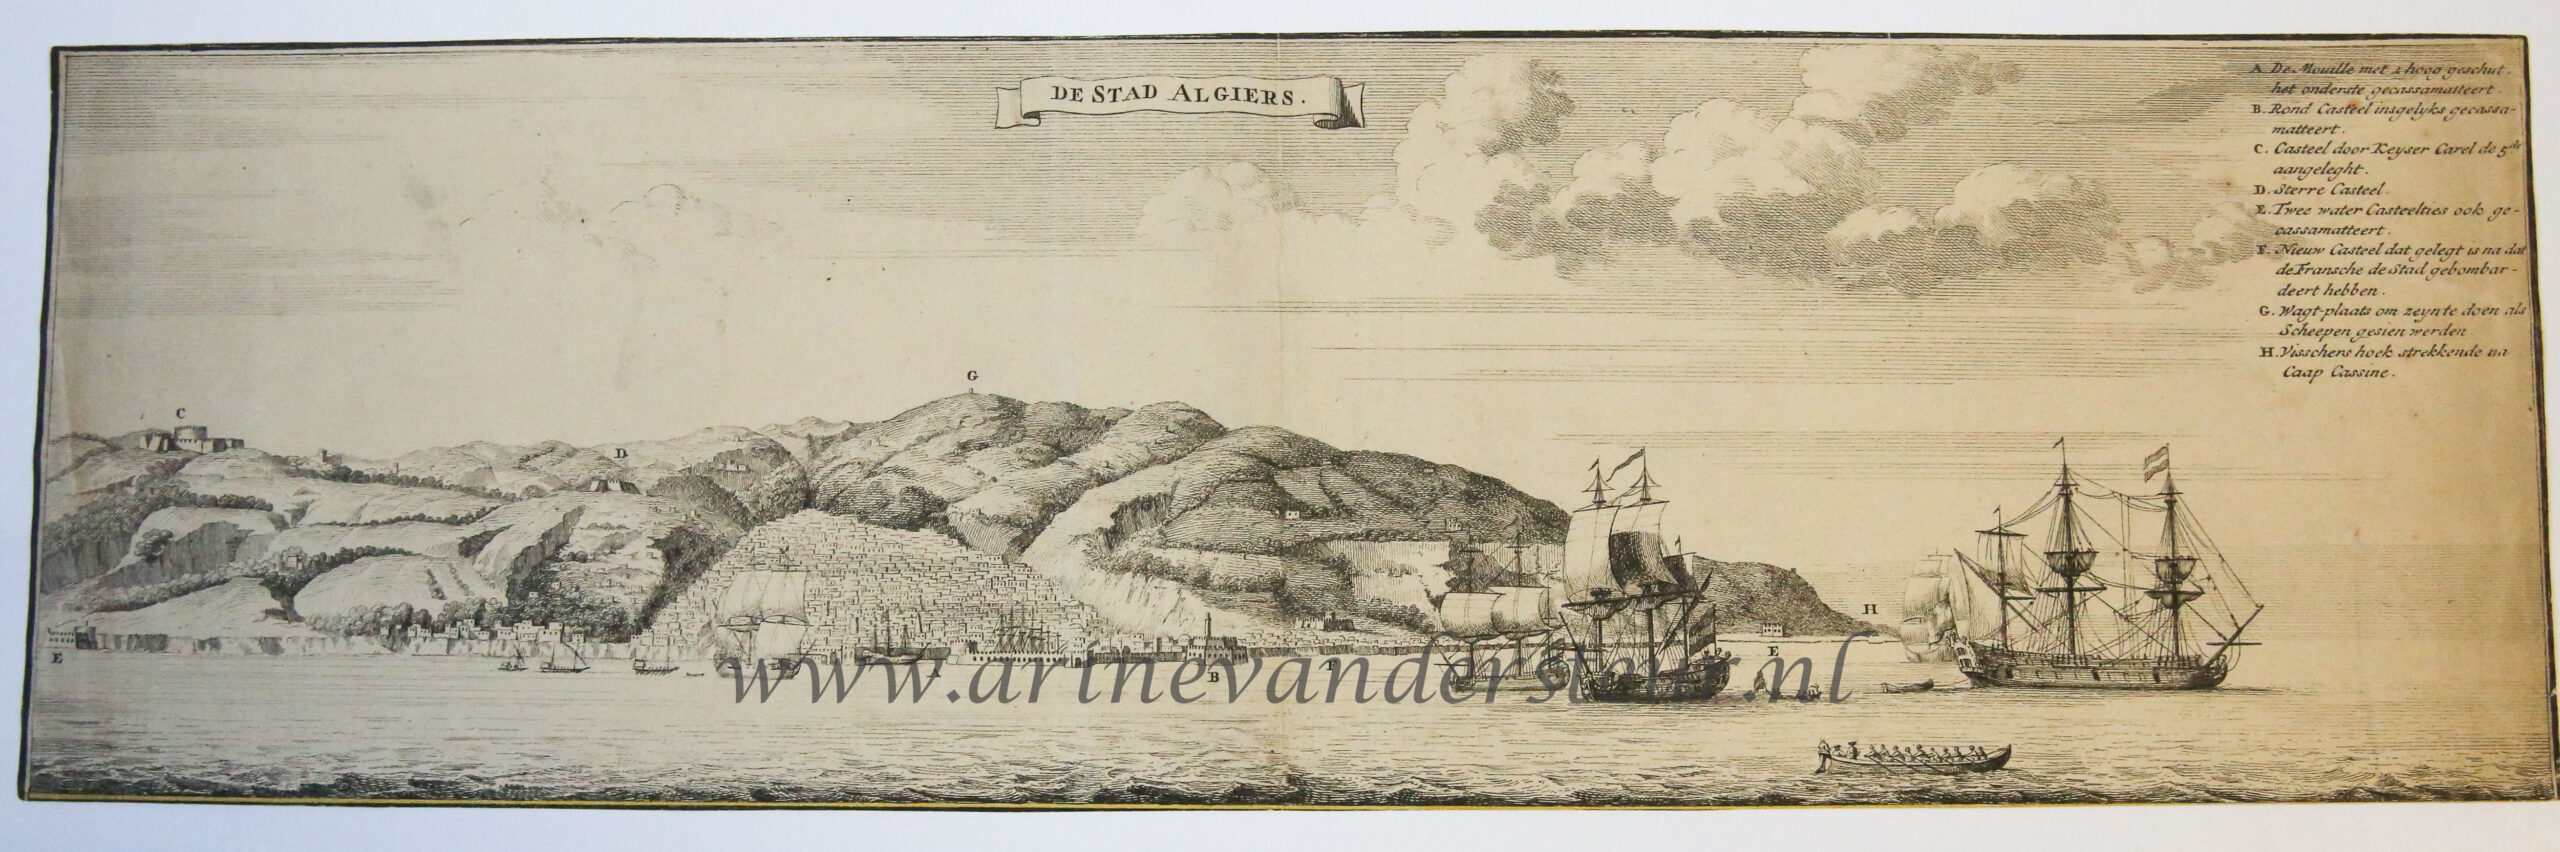 [Antique print, etching] De stad Algiers, published ca. 1725-1747.